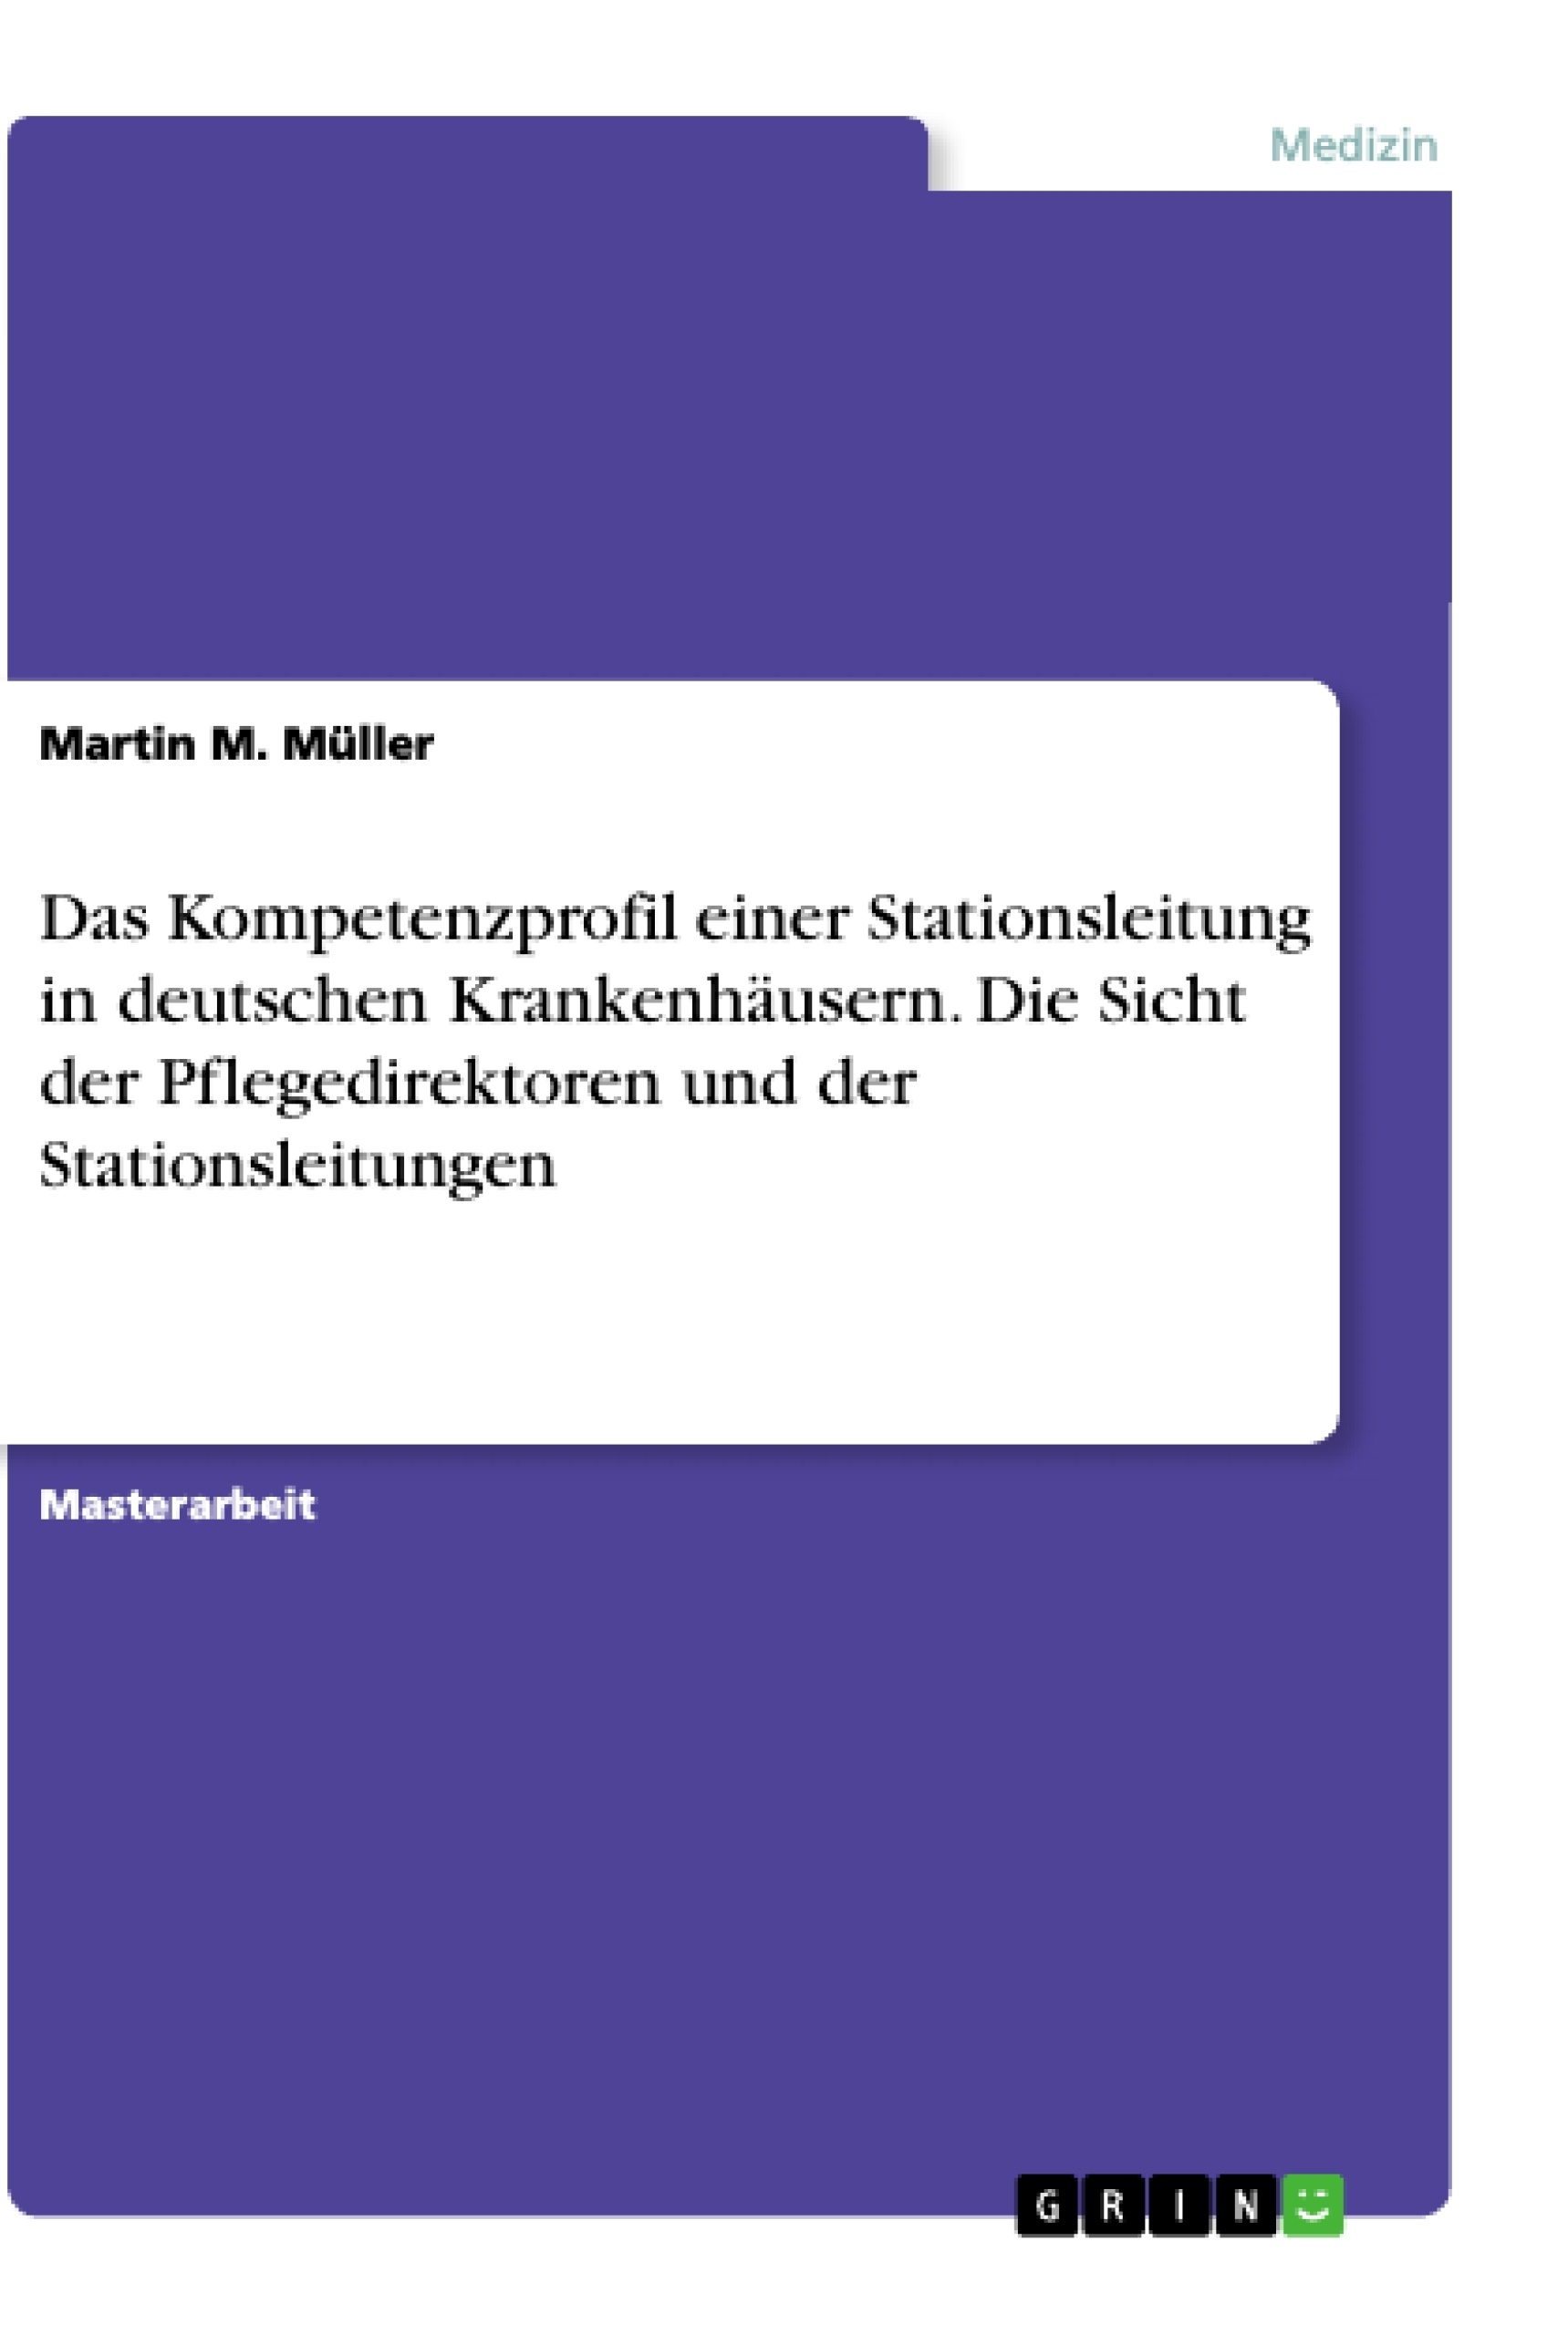 Título: Das Kompetenzprofil einer Stationsleitung in deutschen Krankenhäusern. Die Sicht der Pflegedirektoren und der Stationsleitungen